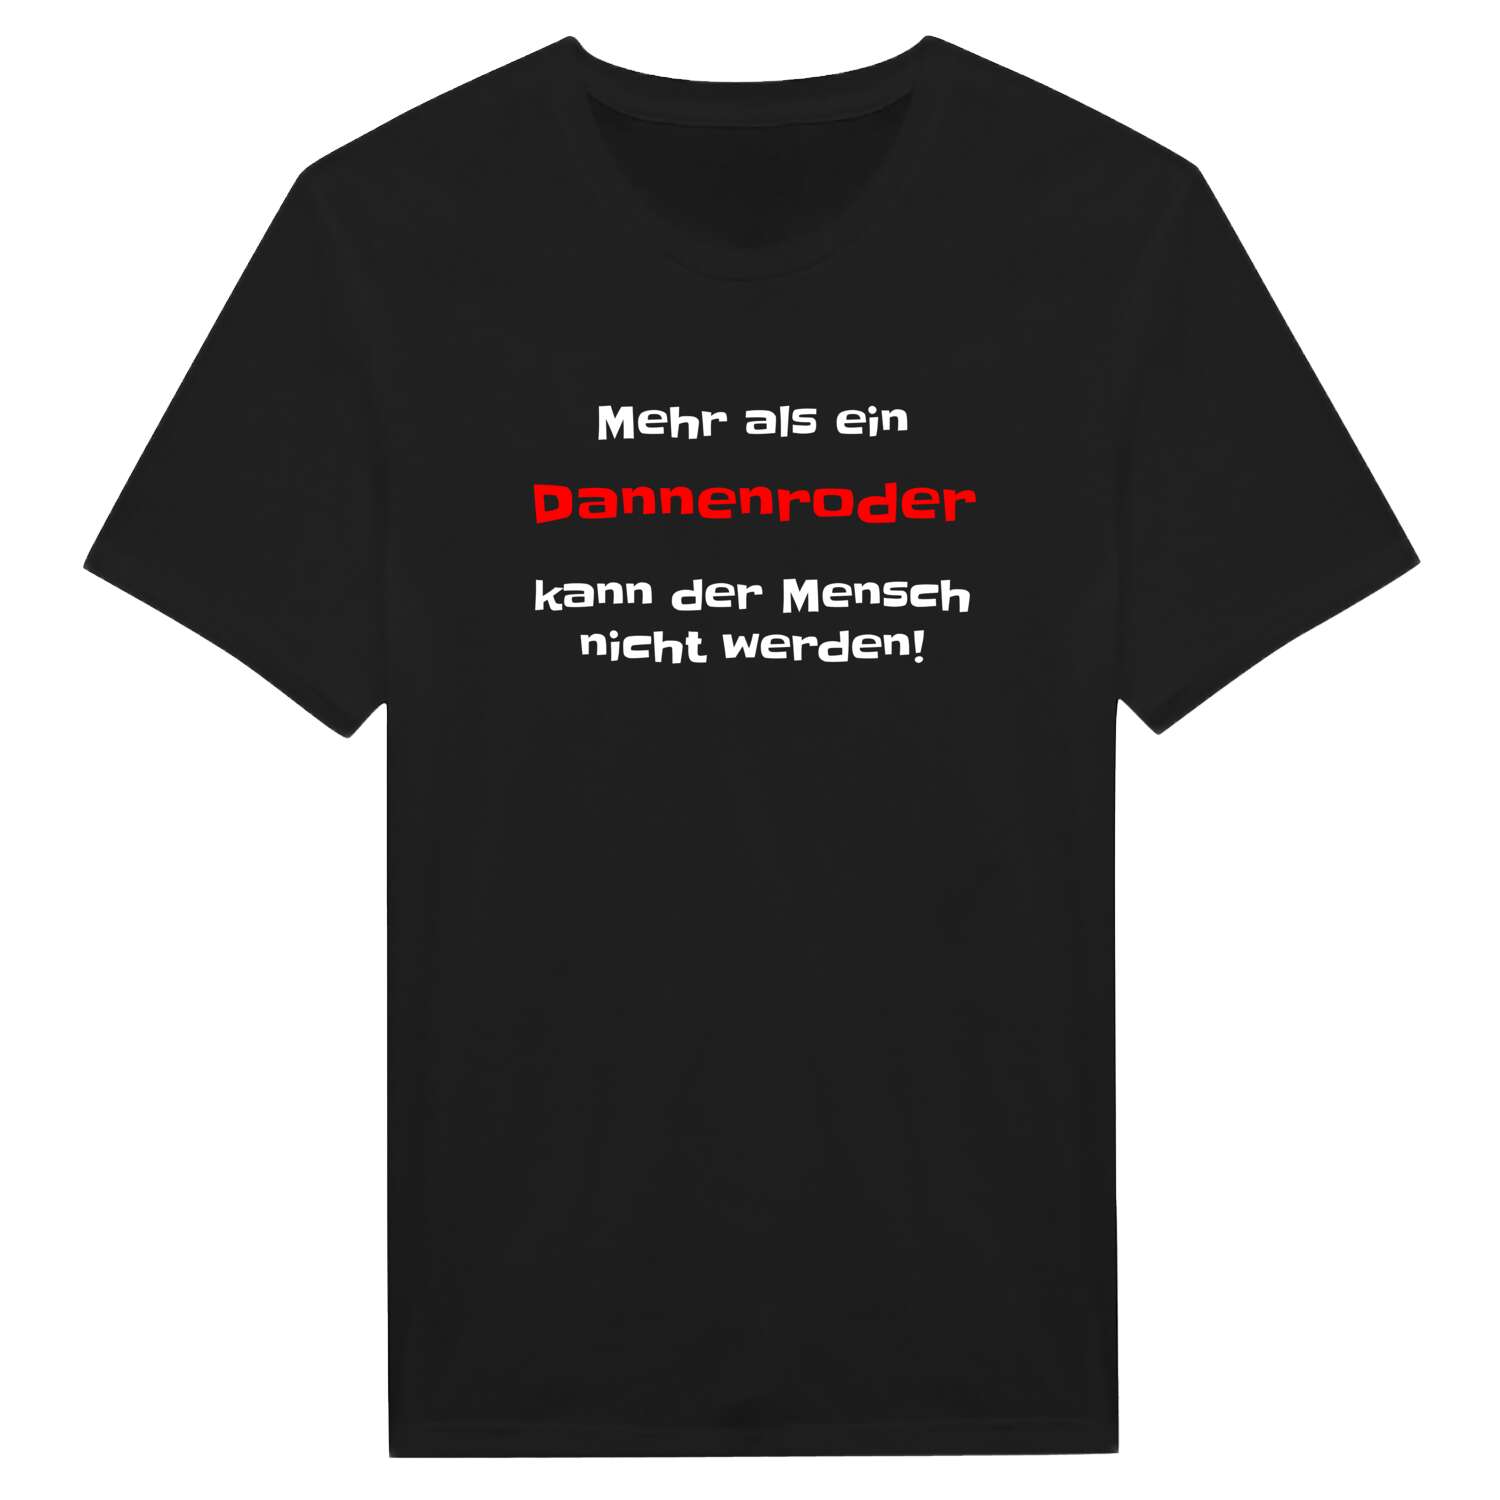 Dannenrod T-Shirt »Mehr als ein«